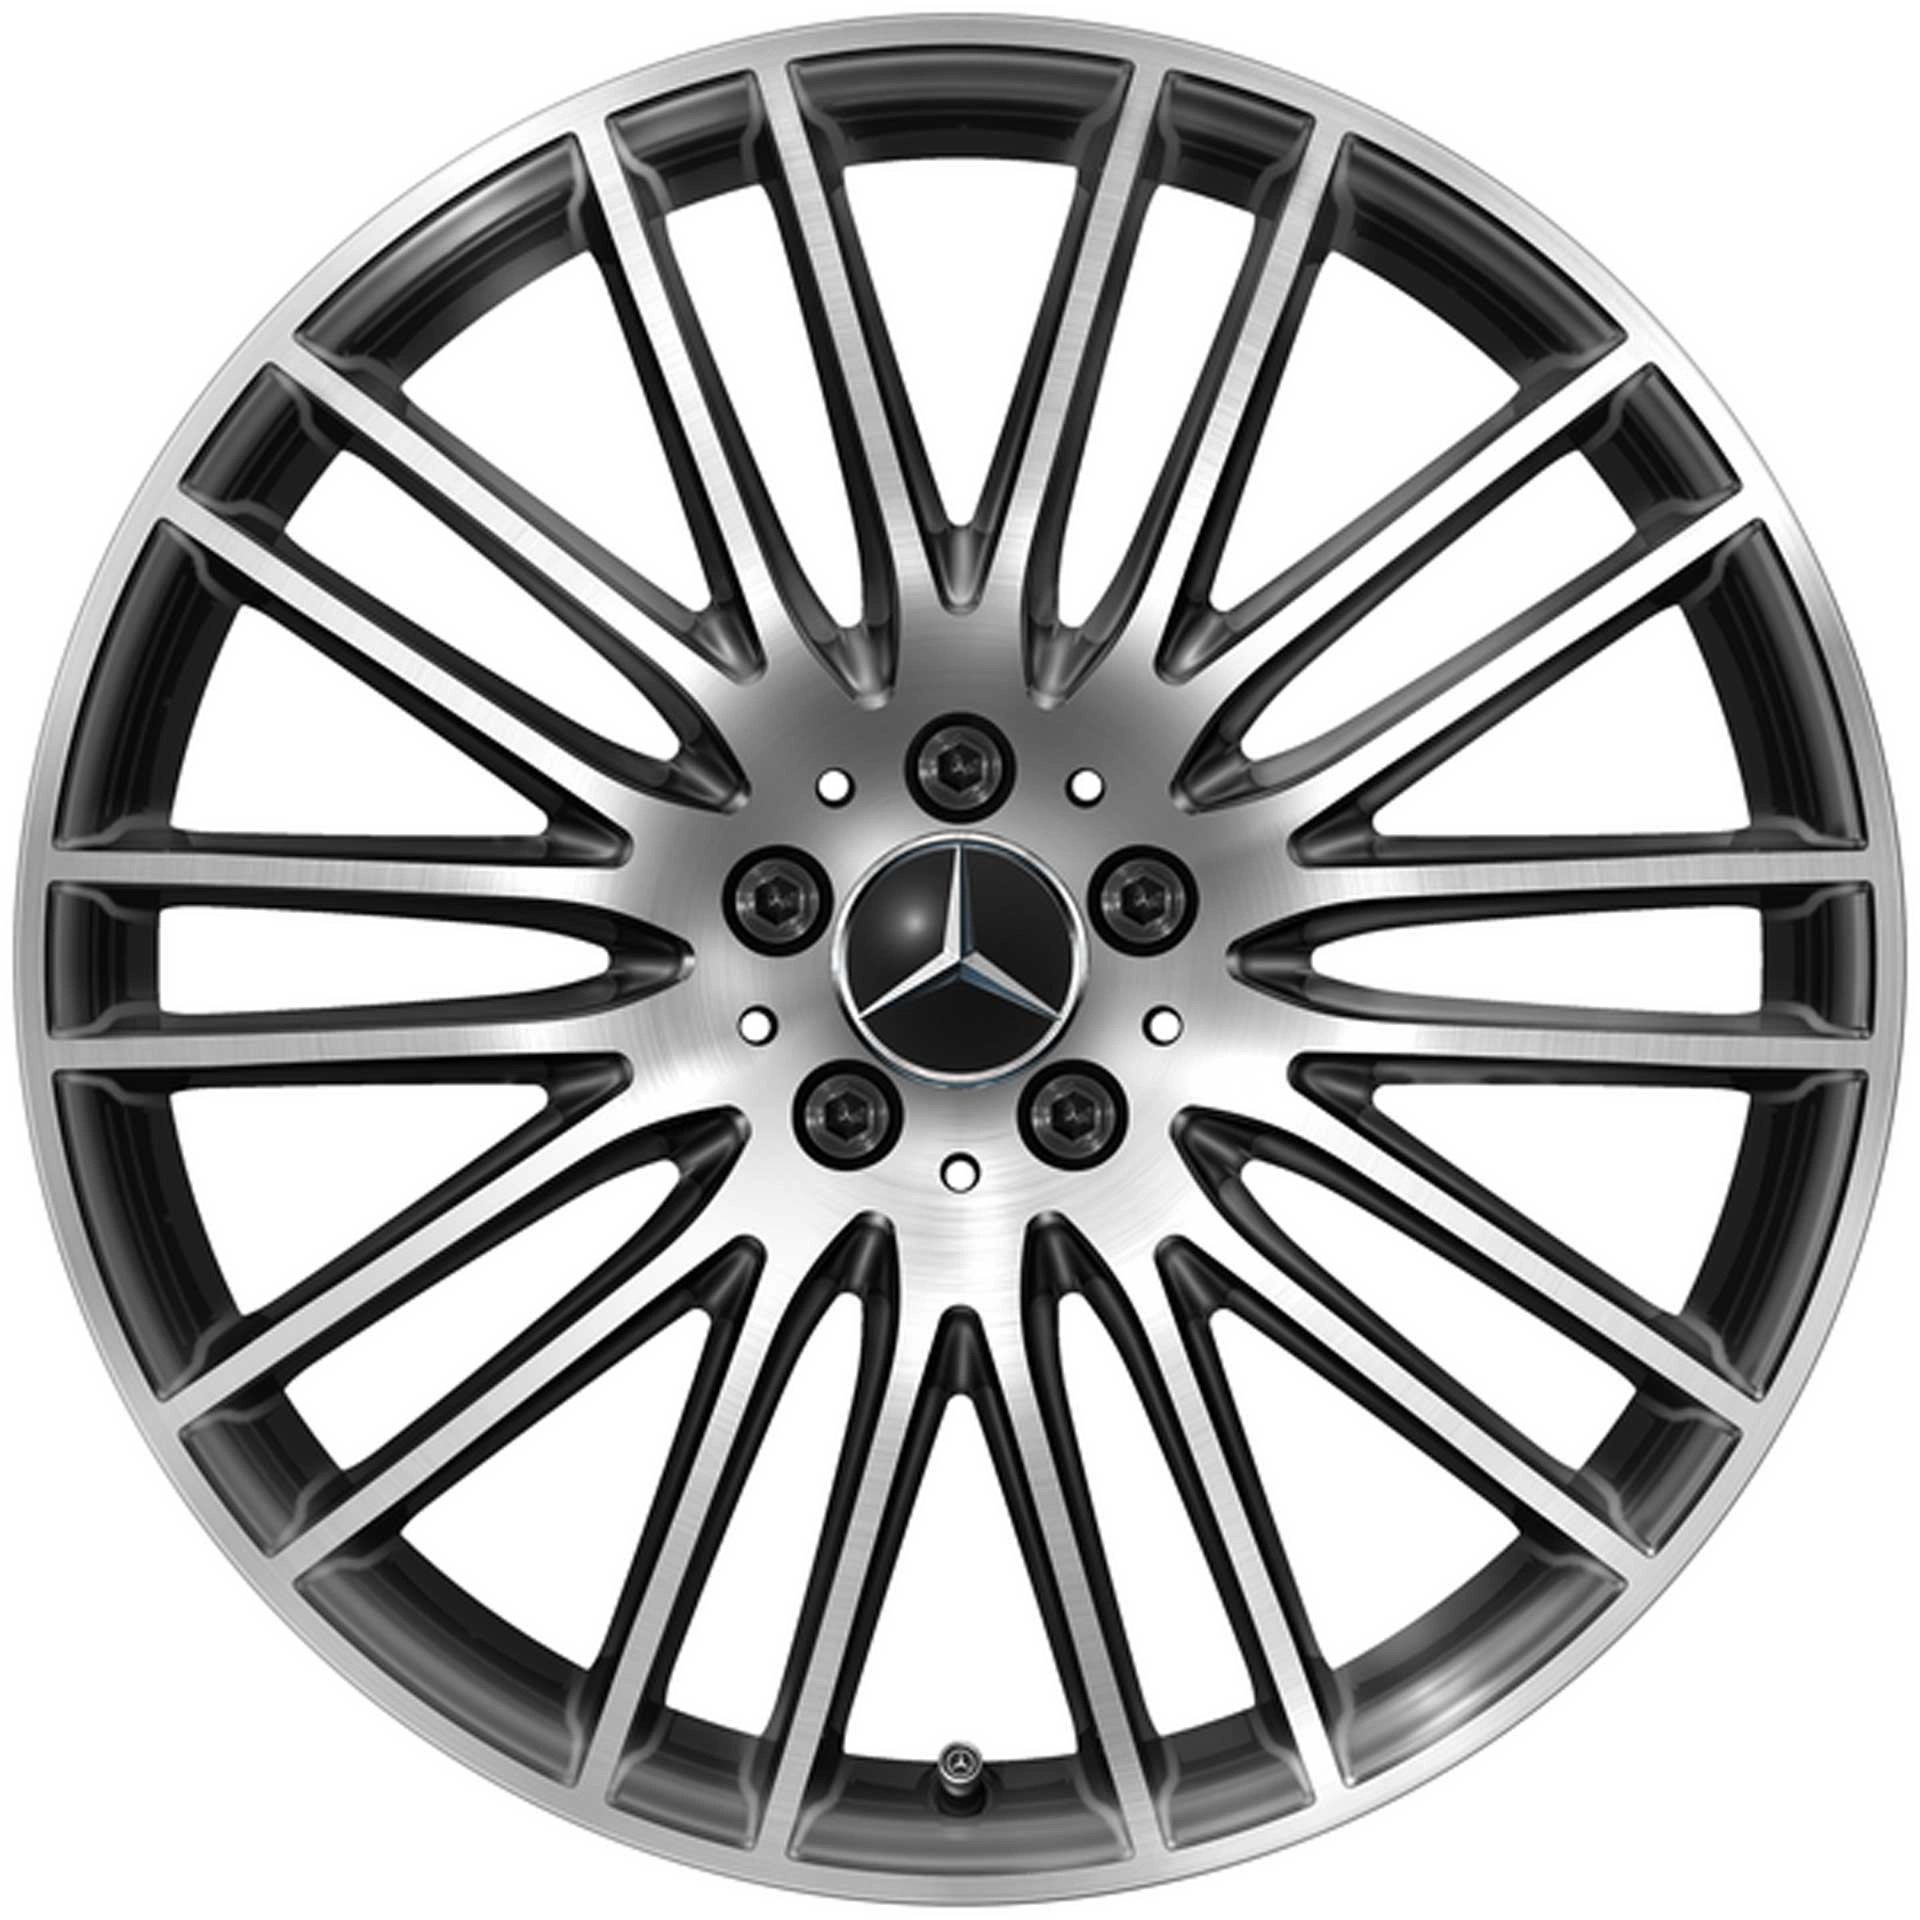 Mercedes-Benz Vielspeichen-Rad 20 Zoll Leichtmetallfelge GLC X254 schwarz glanzgedreht A25440148007X23